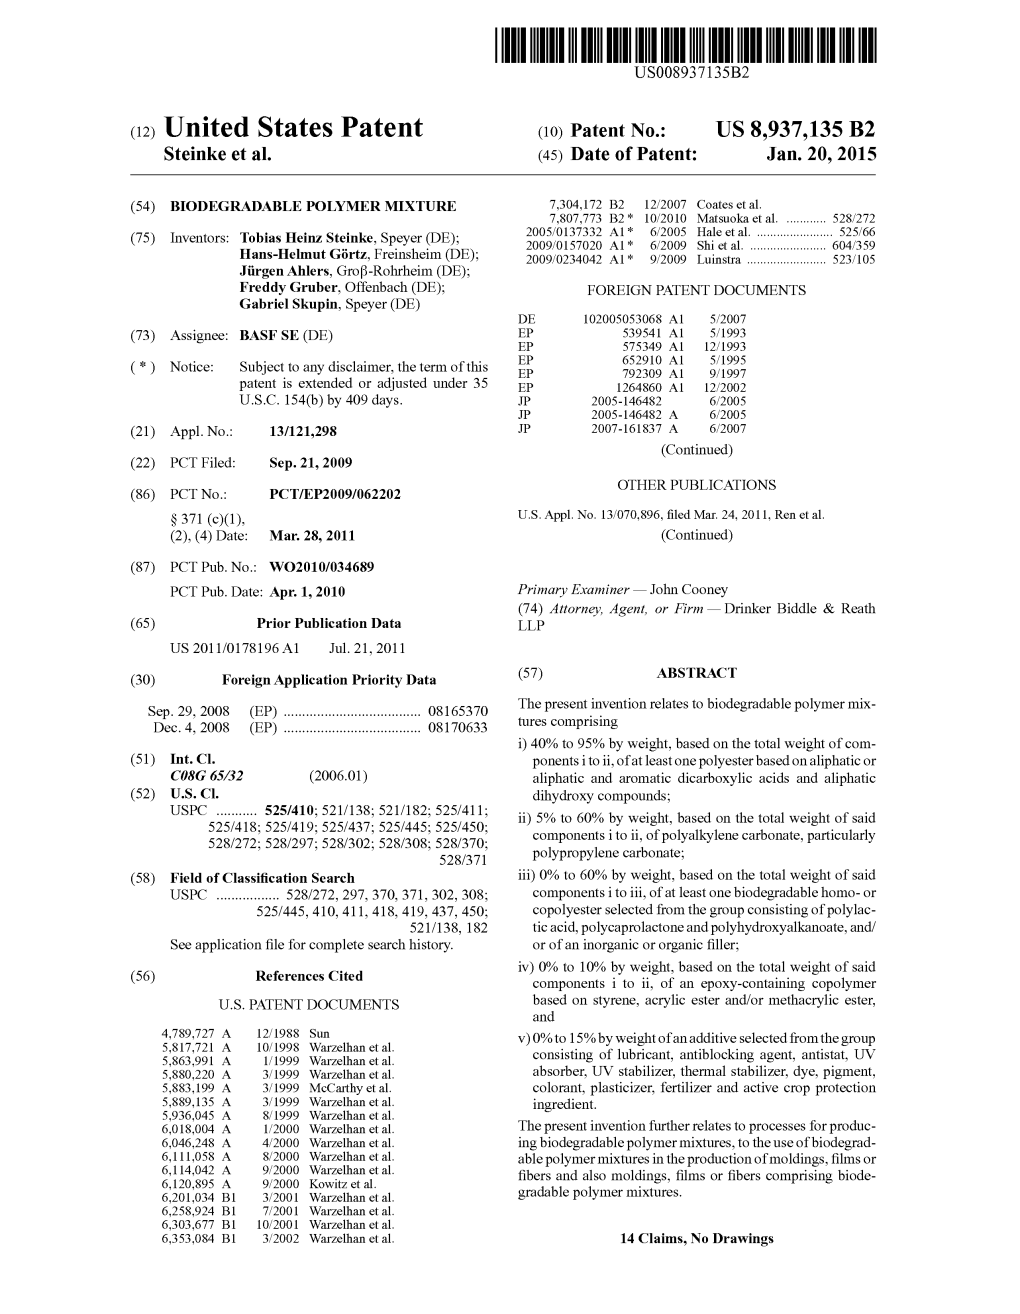 (12) United States Patent (10) Patent No.: US 8,937,135 B2 Steinke Et Al